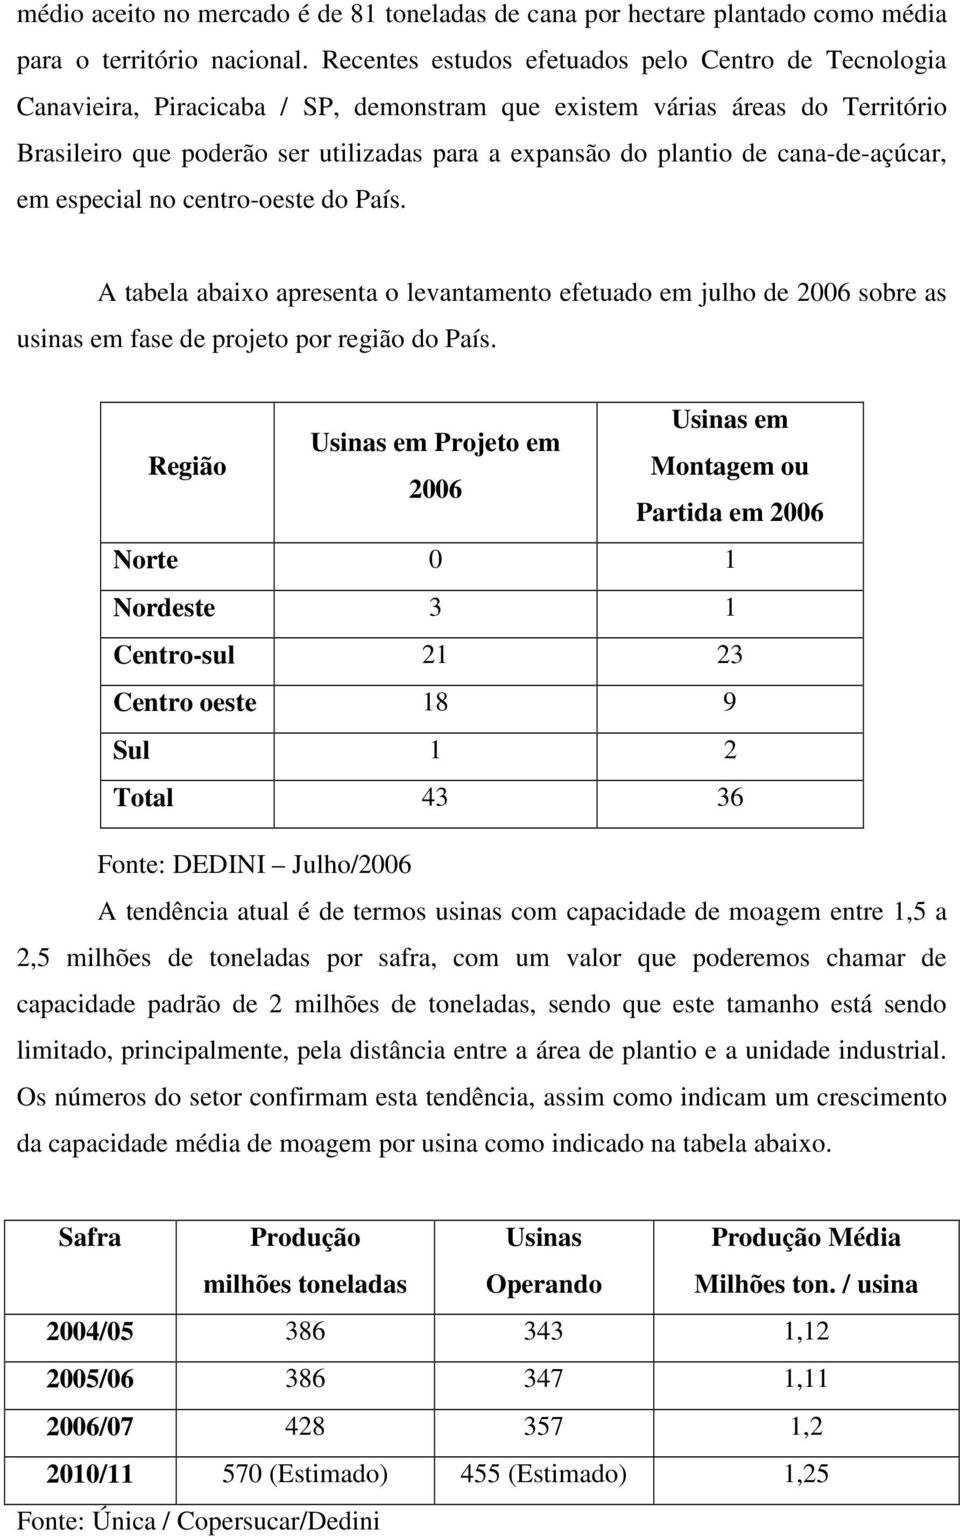 cana-de-açúcar, em especial no centro-oeste do País. A tabela abaixo apresenta o levantamento efetuado em julho de 2006 sobre as usinas em fase de projeto por região do País.